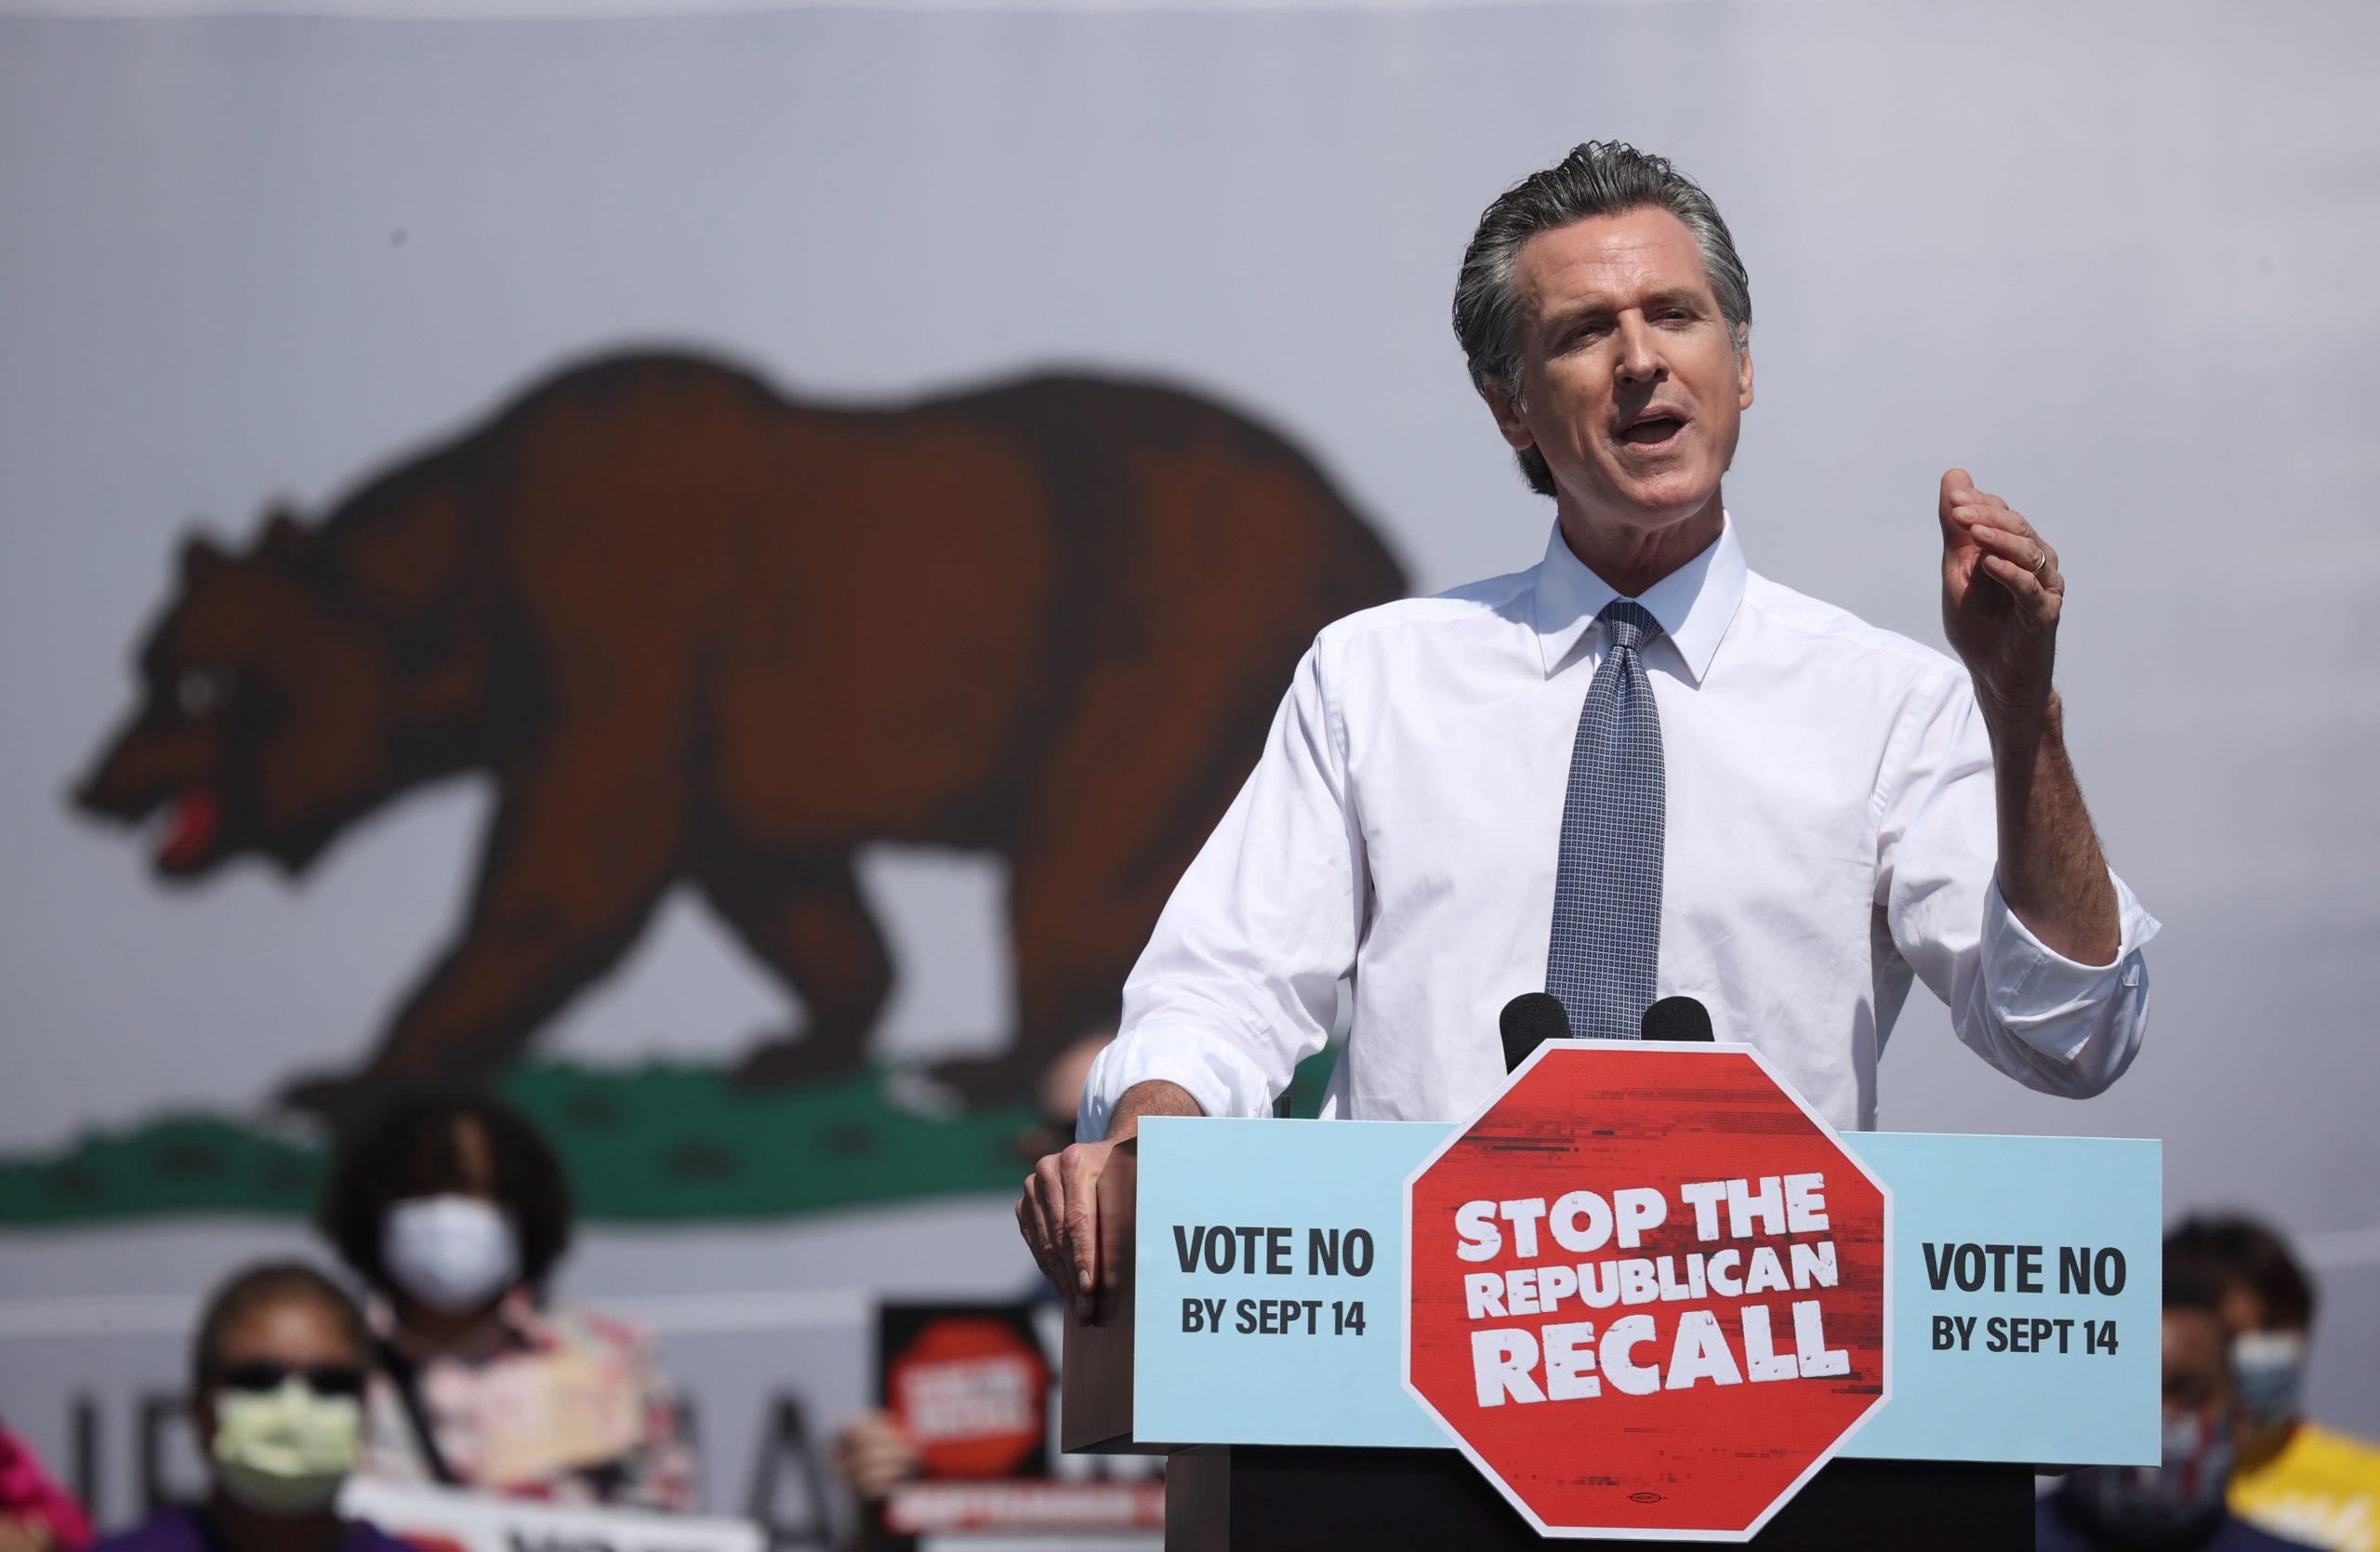 La elección de retiro de California es demasiado pronto para convocar, ya que las urnas cierran y el trabajo de Gavin Newsom está en juego